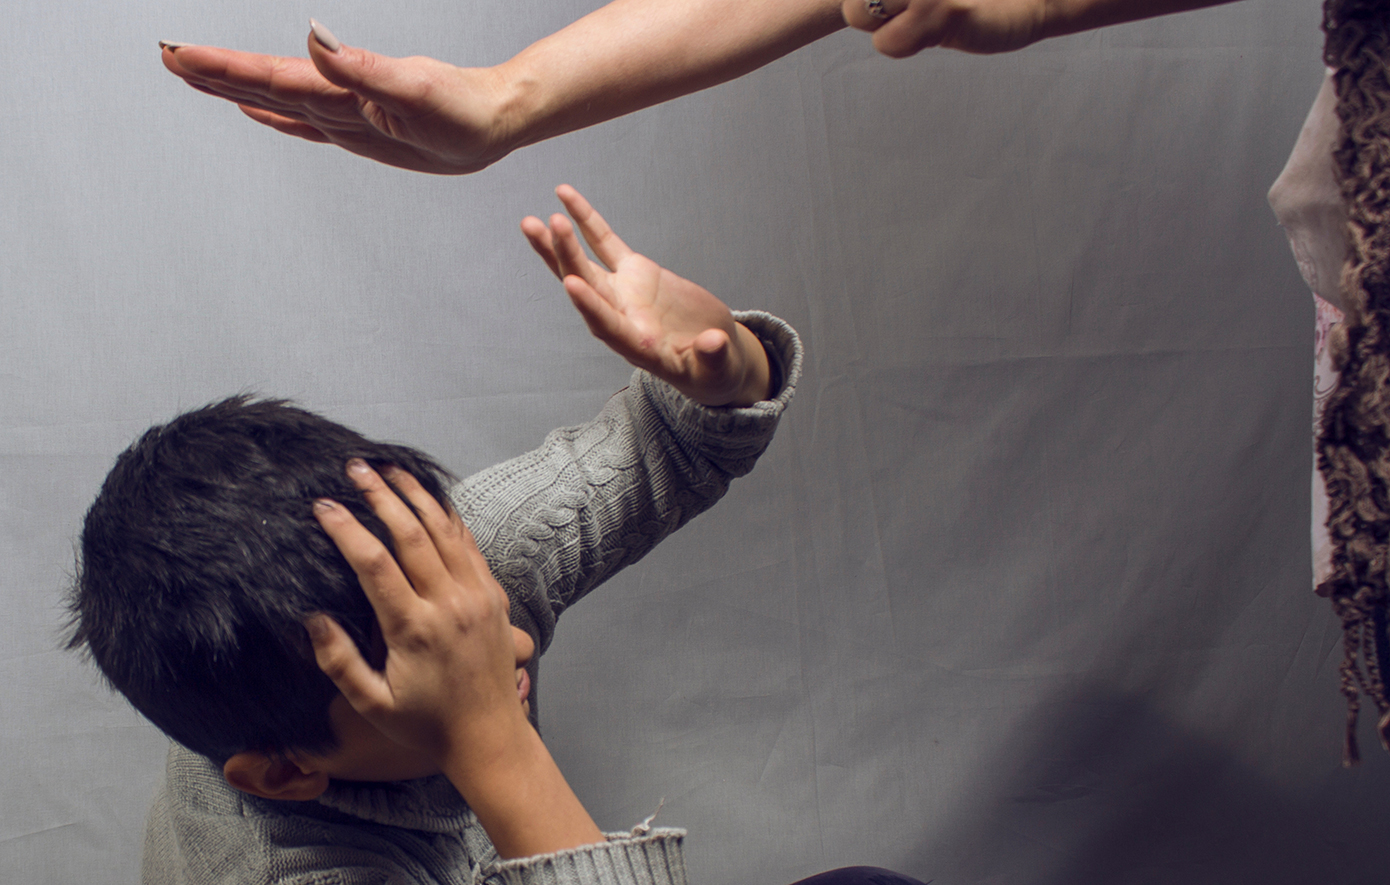 Νέο περιστατικό ενδοοικογενειακής βίας στο Αγρίνιο – Χτύπησε τη γυναίκα του με τούβλο στο κεφάλι